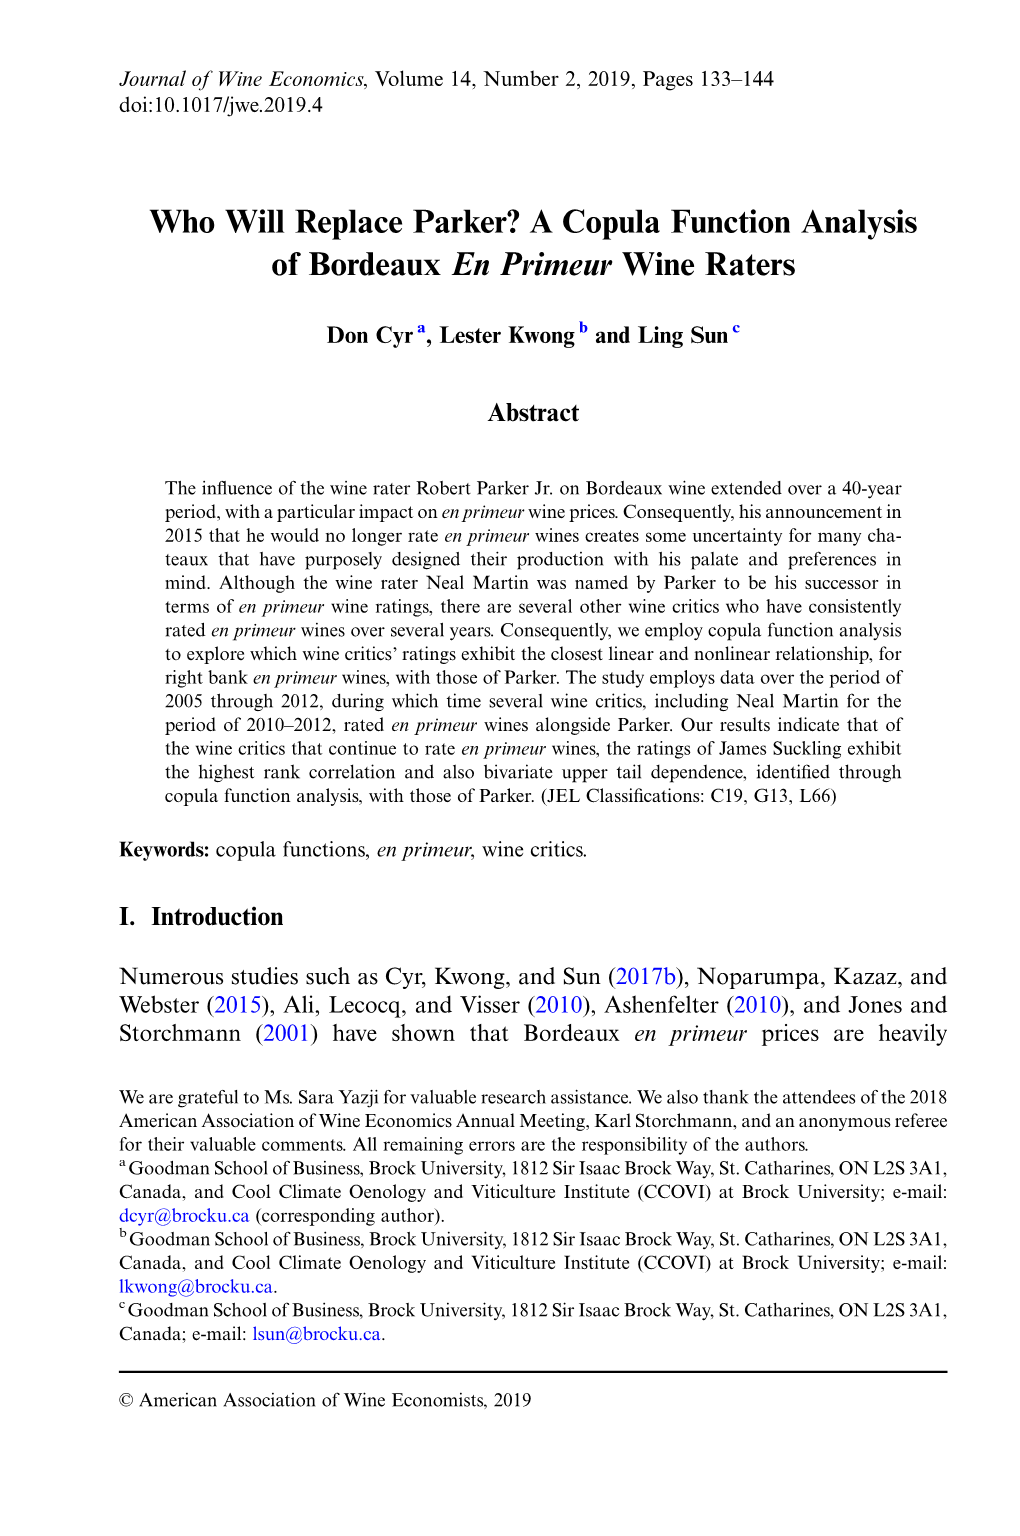 A Copula Function Analysis of Bordeaux En Primeur Wine Raters